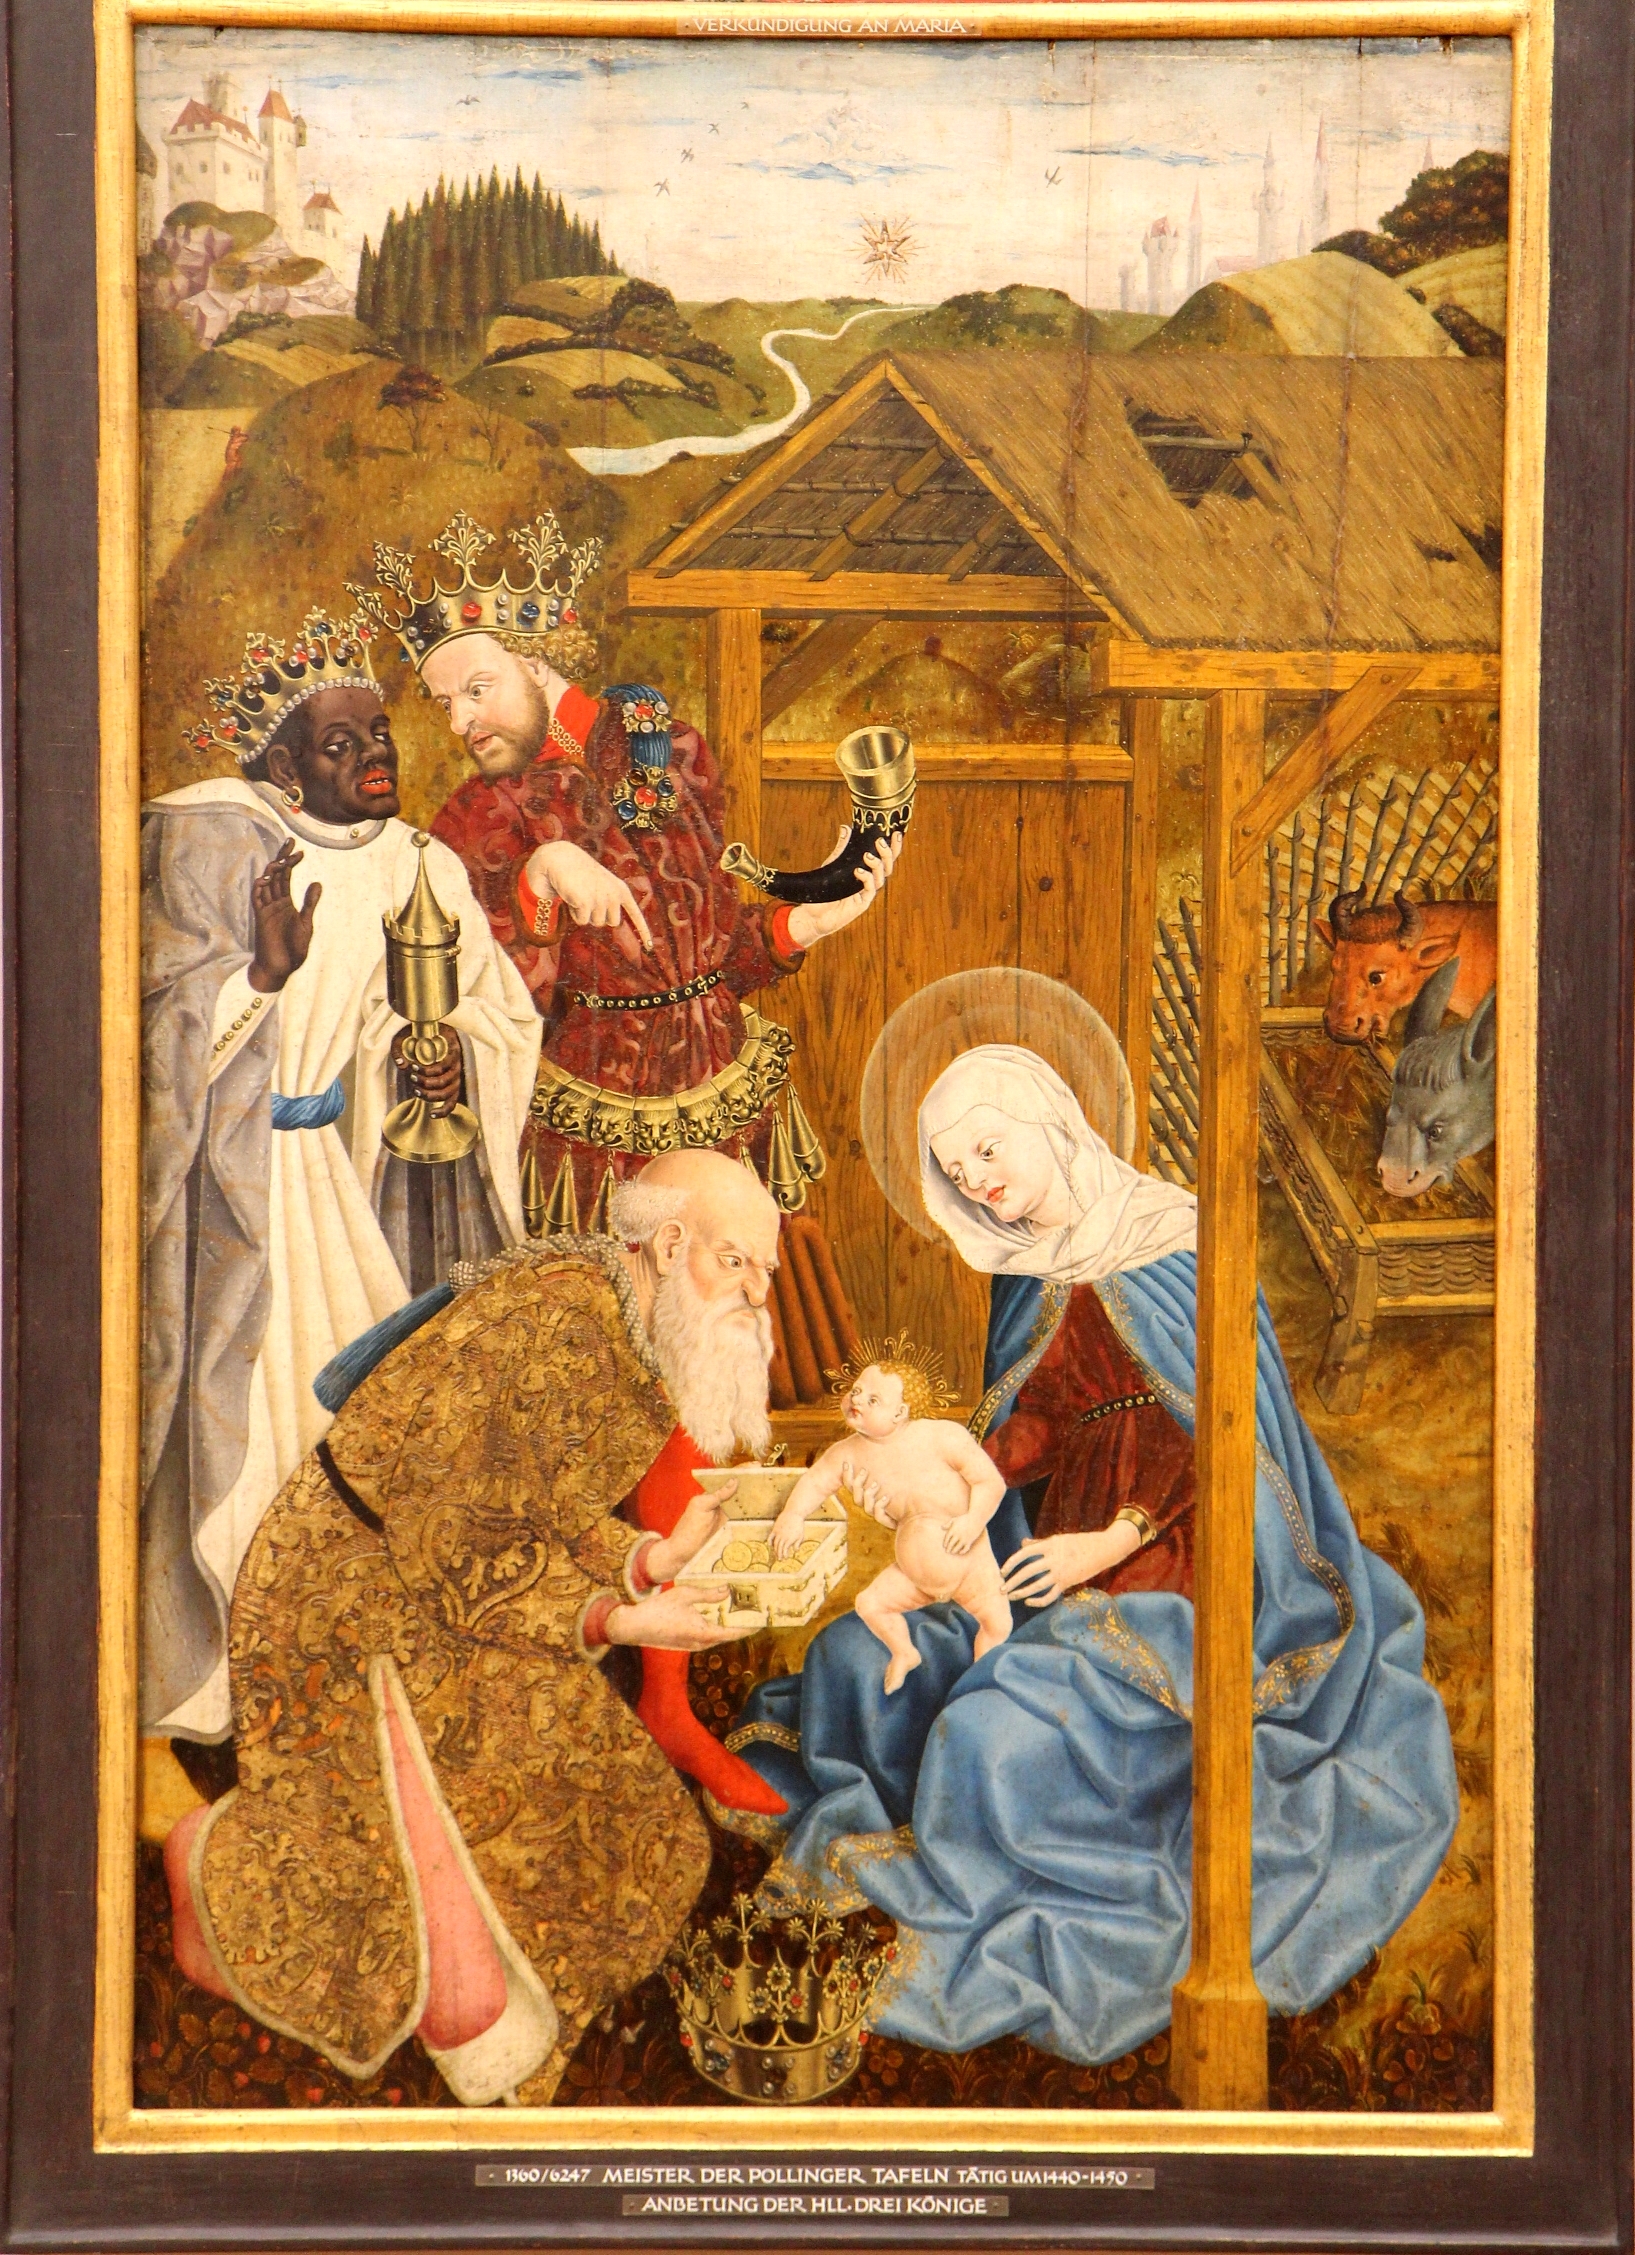 Kolmen viisaan miehen vierailu; maalaus 1440-50, Alte Pinakothek, München